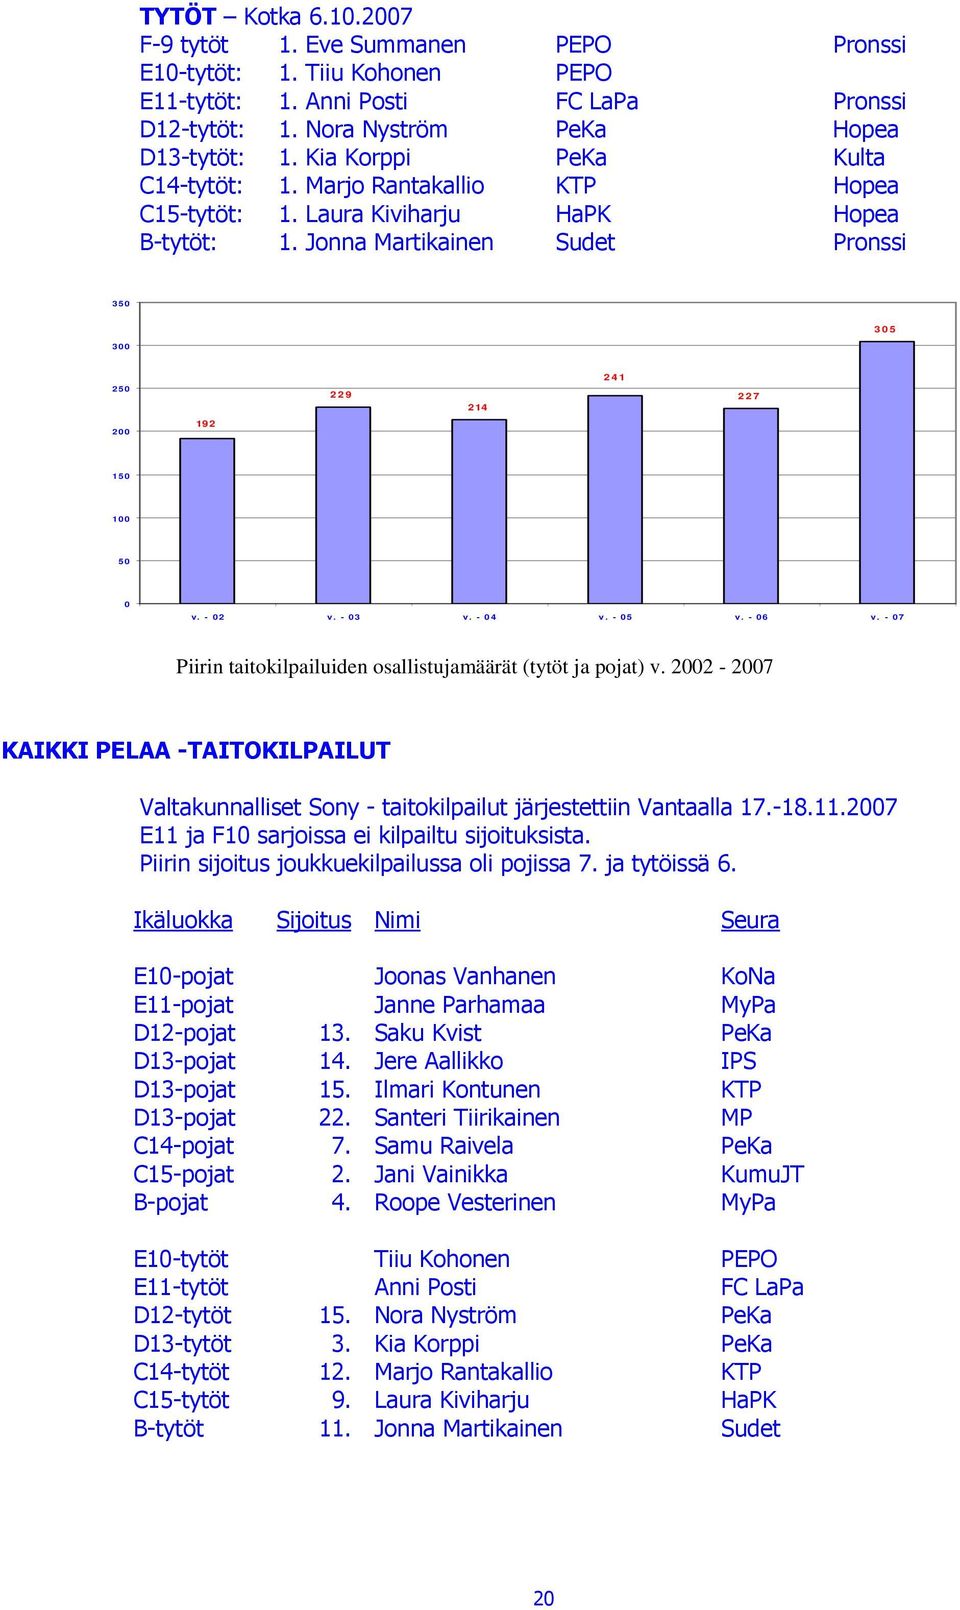 Jonna Martikainen Sudet Pronssi 350 3 0 5 300 2 4 1 250 2 2 9 2 14 2 2 7 200 19 2 150 100 50 0 v. - 02 v. - 03 v. - 04 v. - 05 v. - 06 v.